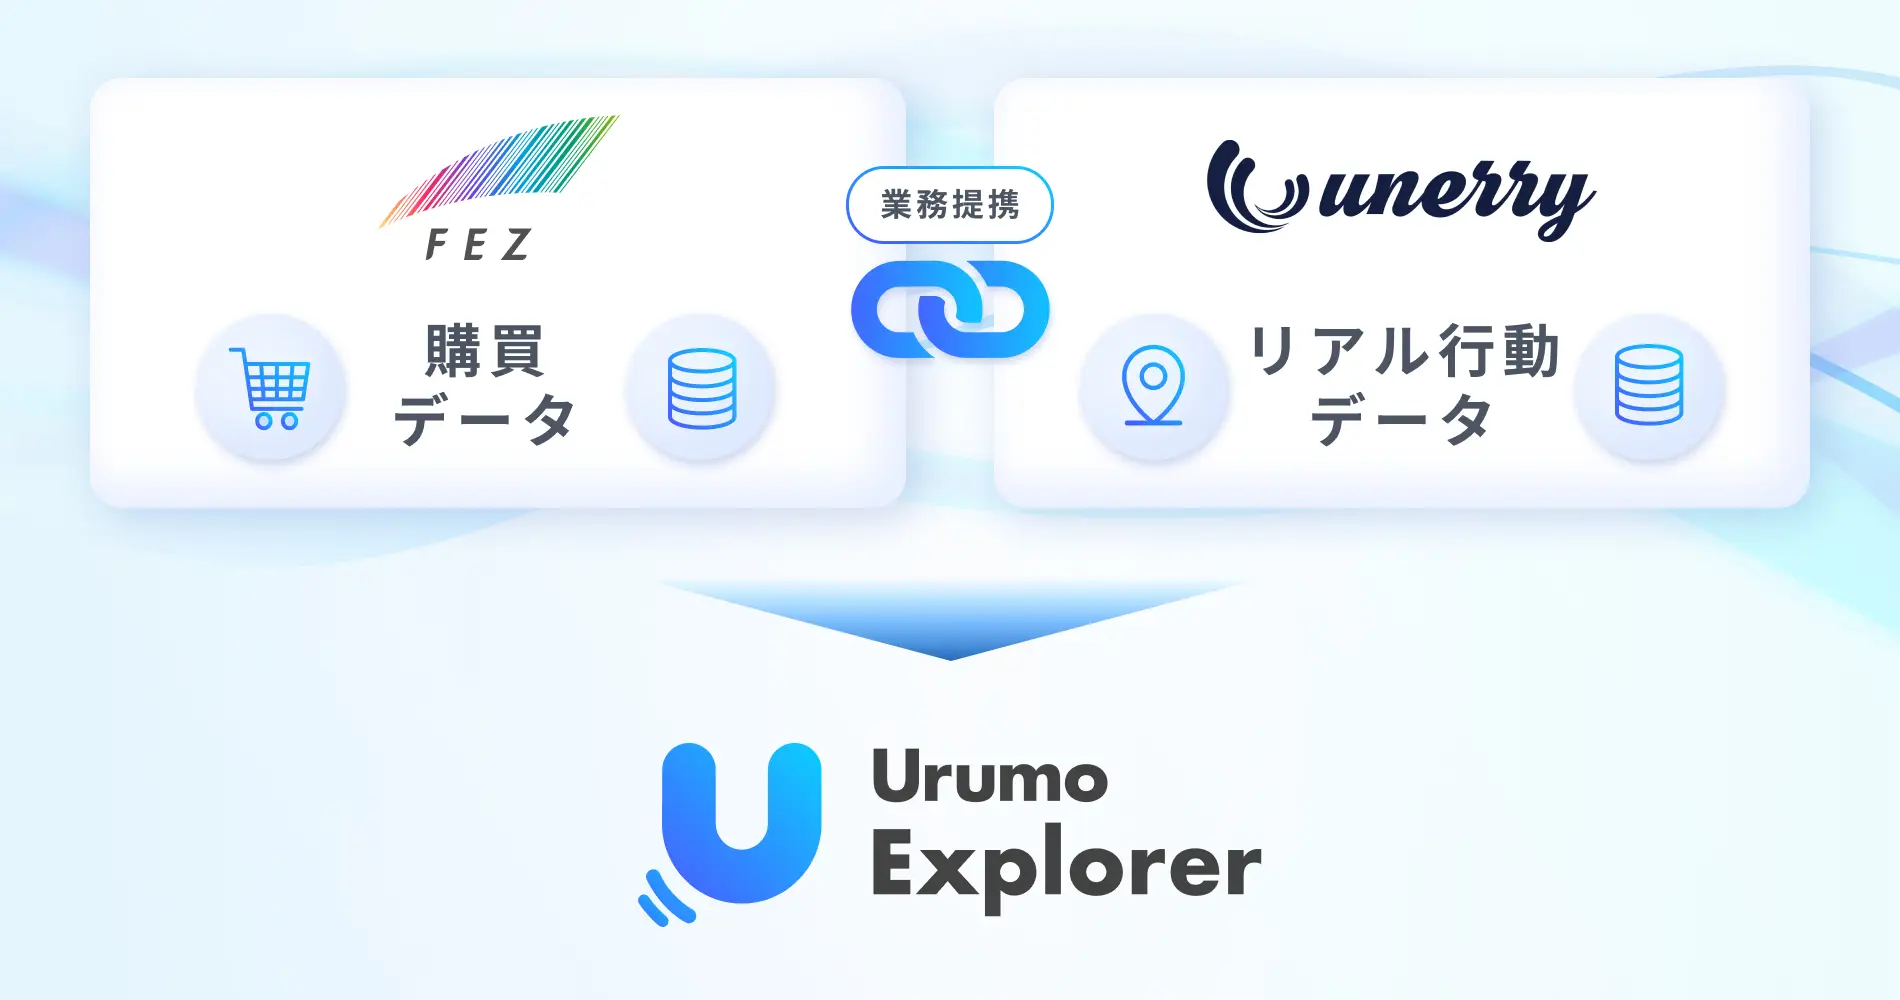 「MarkeZine」にてunerry社との業務提携および『Urumo Explorer』に関する記事が掲載されました